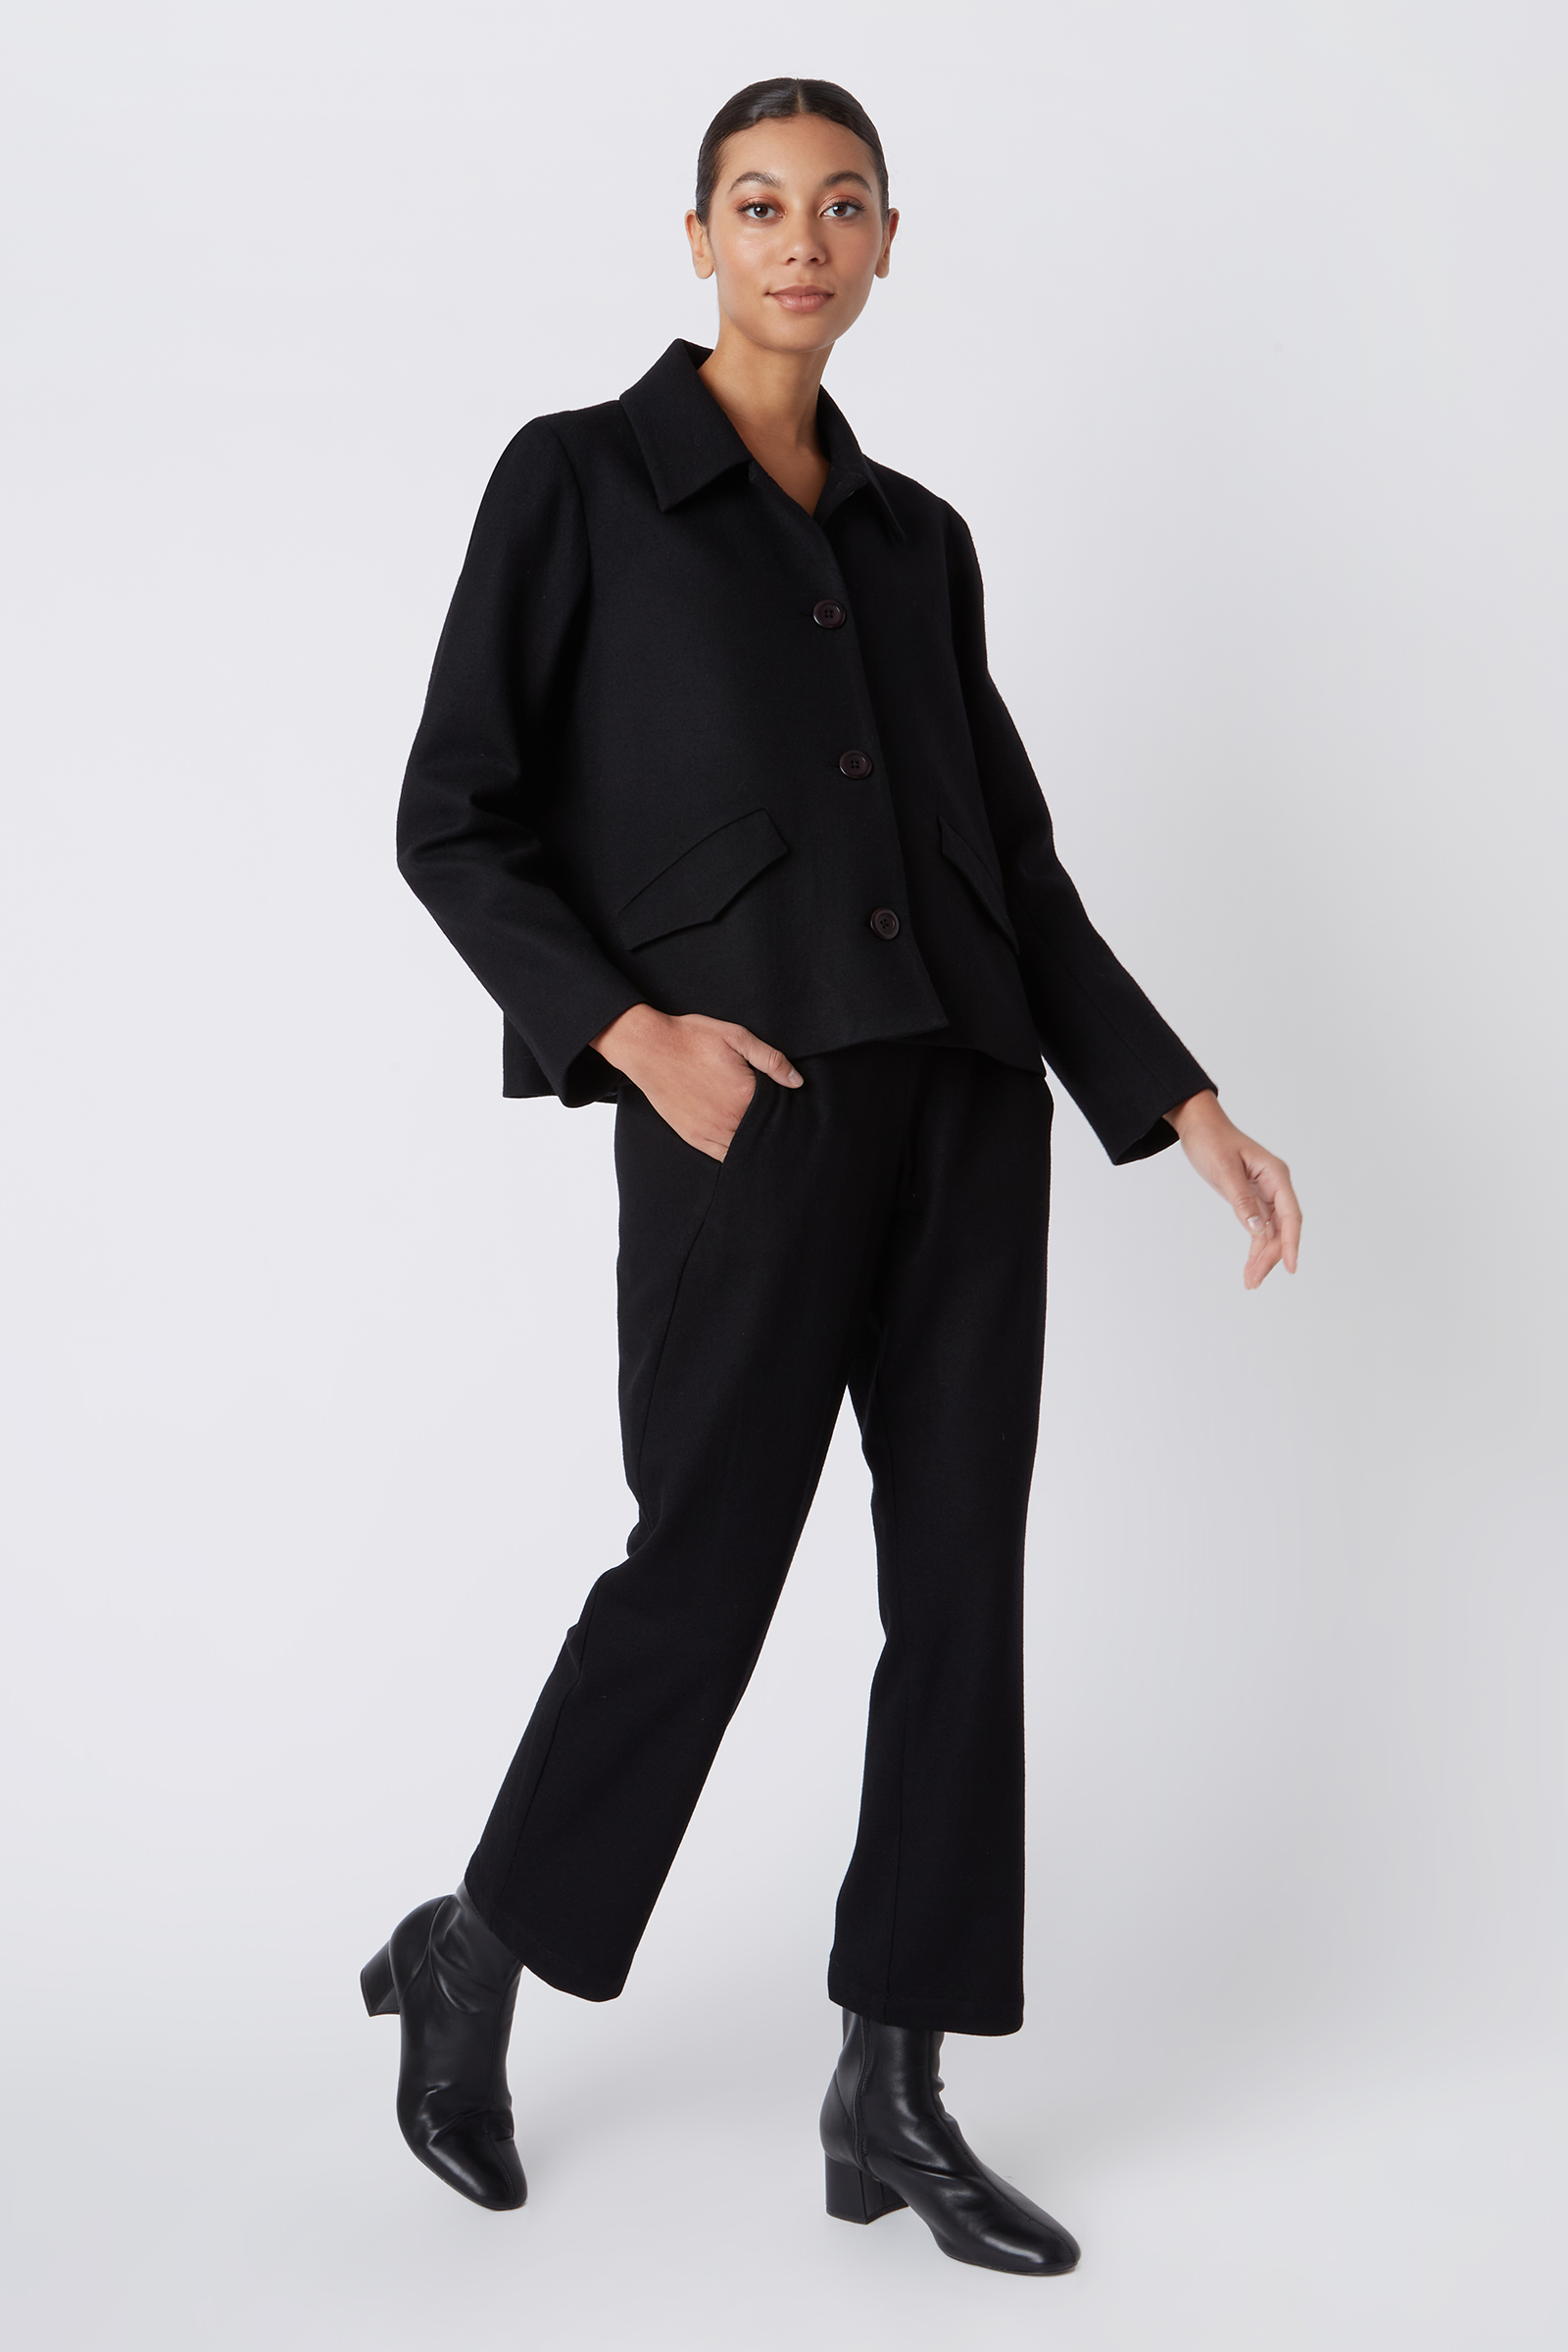 Kal Rieman Sylvie FJ Swing Jacket in Black Felted Jersey on Model Walking Full Front View